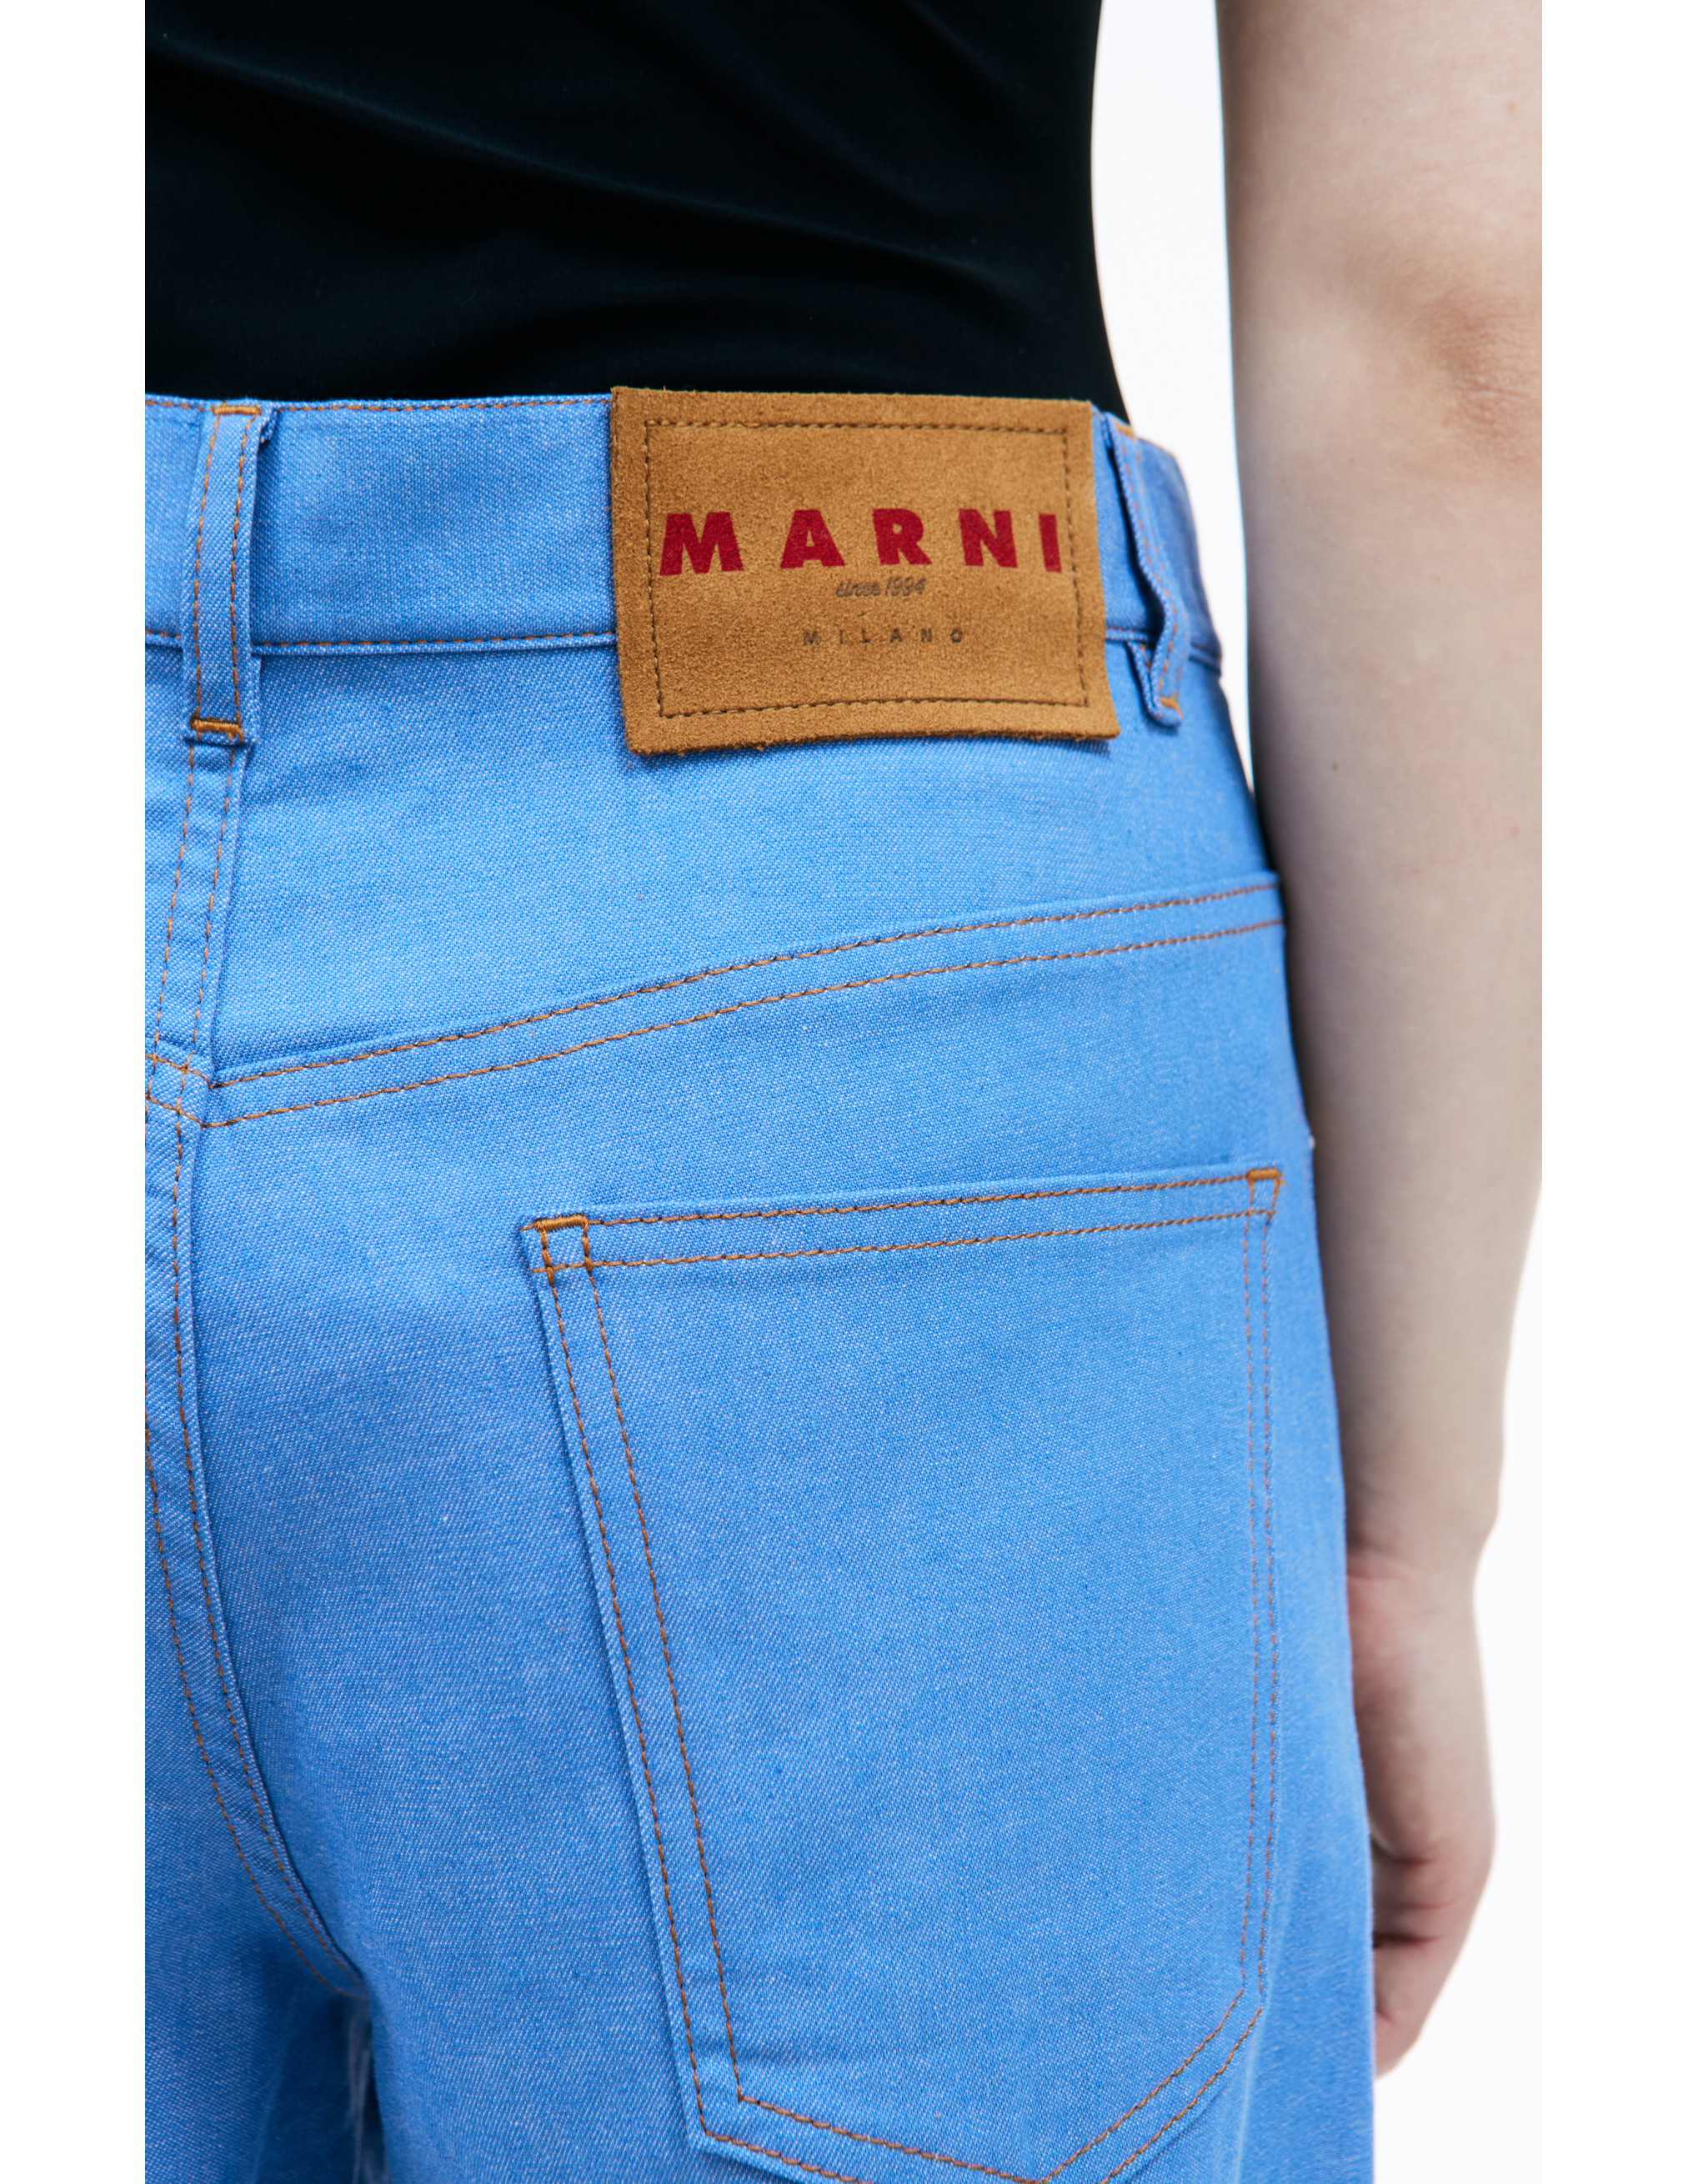 Расклешенные джинсы с вышитым логотипом Marni PAJD0492S0/UTC341/00B52, размер 38;40;42 PAJD0492S0/UTC341/00B52 - фото 5